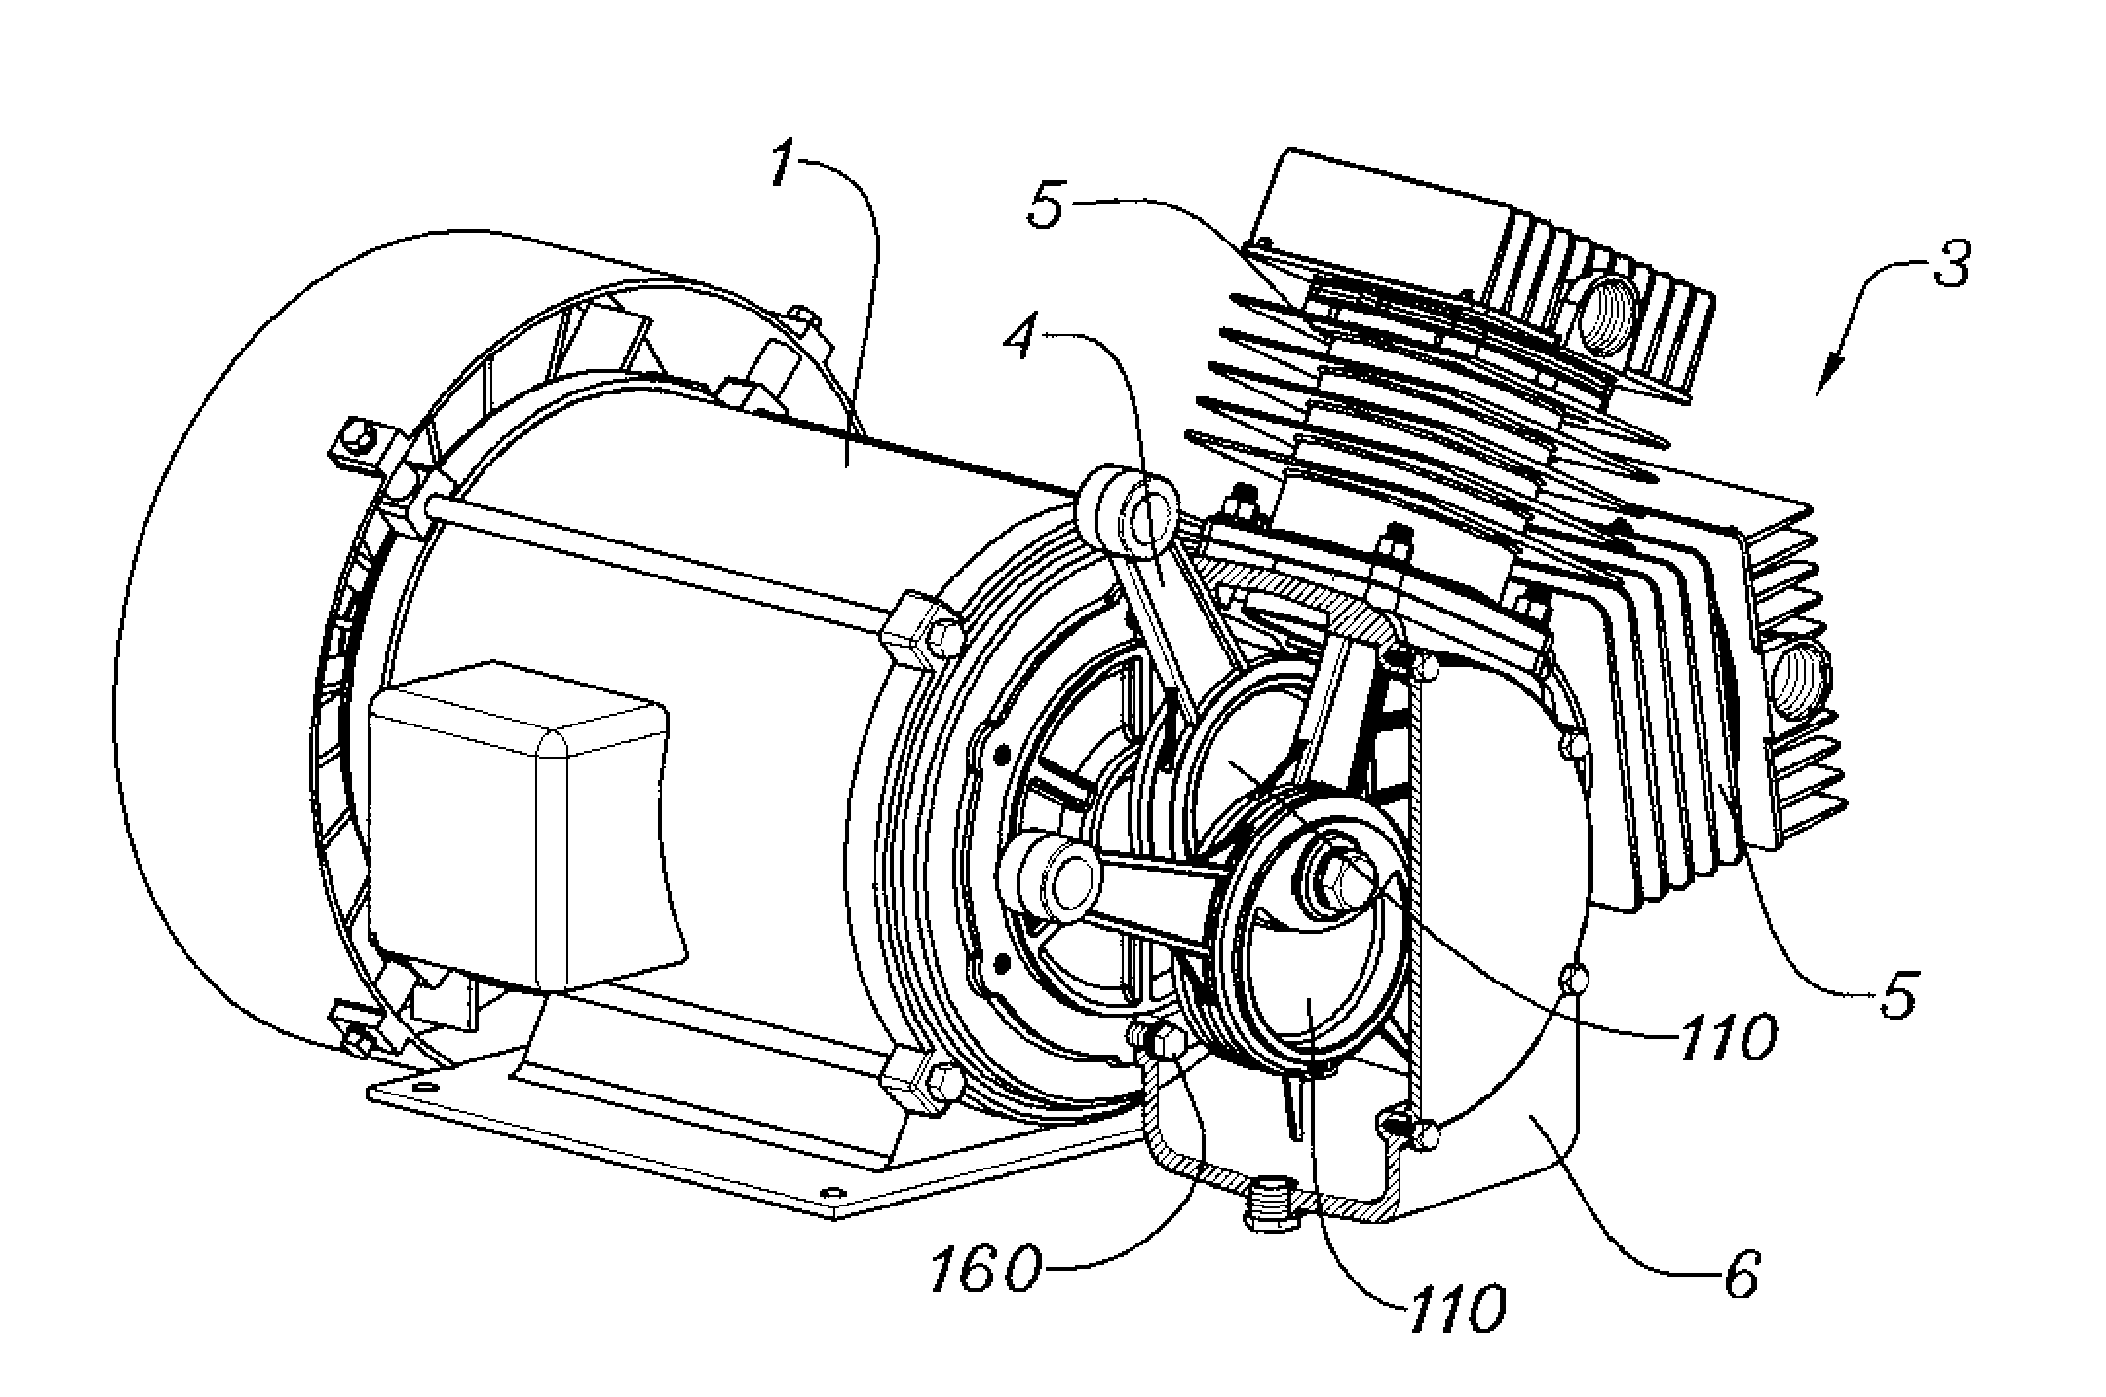 Direct crankshaft of air compressor